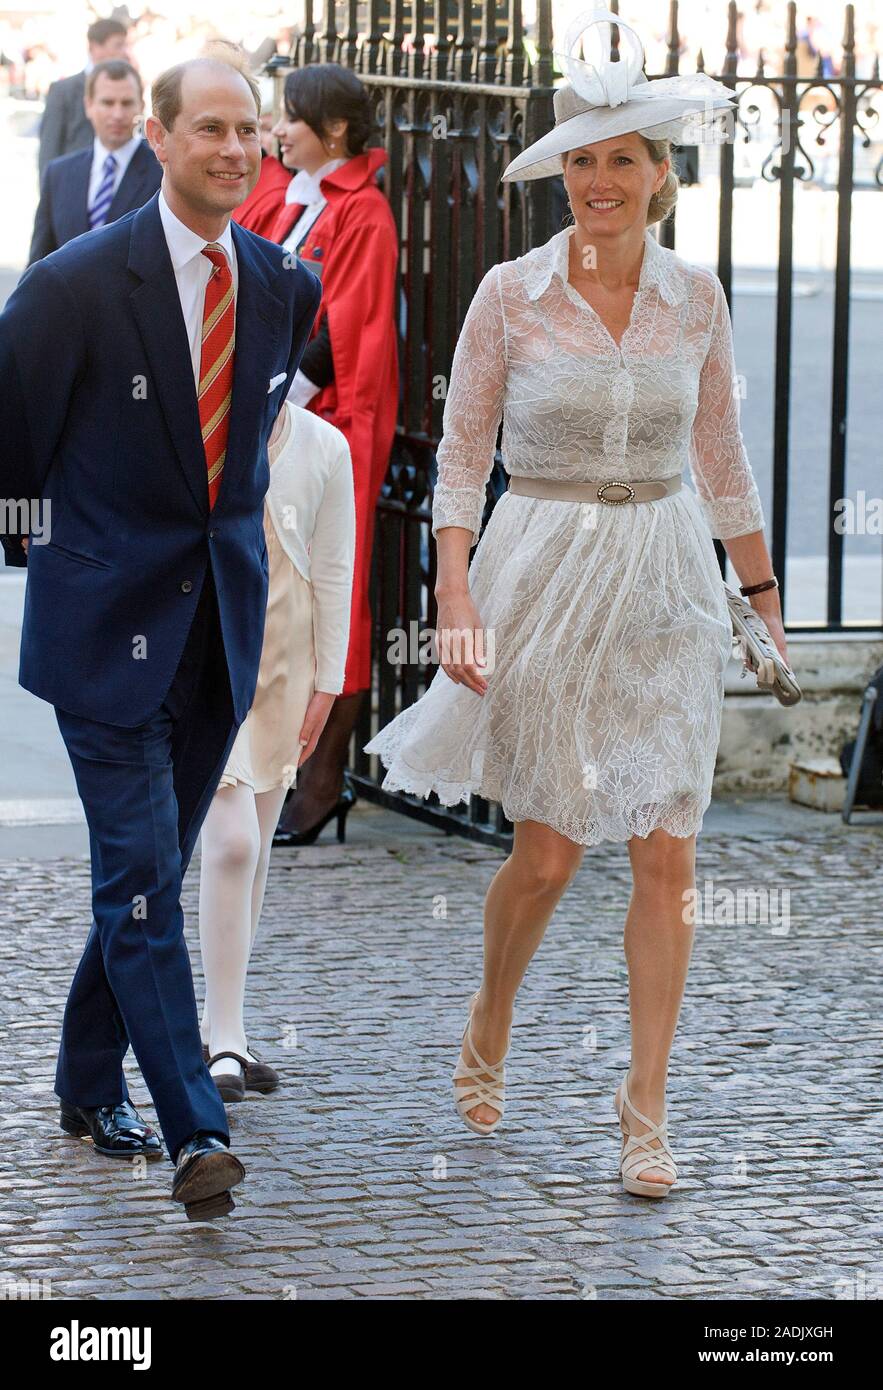 Prince Edward, moglie Sophie Wessex e figlia Lady Louise Windsor unire H.M. La regina che arrivano a Westminster Abbey per una cerimonia per commemorare il sessantesimo anniversario della sua incoronazione nel 1953. Accompagnata dal Duca di Edimburgo, il principe Carlo e la duchessa di Cornovaglia, il Duca e la Duchessa di Cambridge e gli altri membri della famiglia reale Giugno 2013. Foto Stock